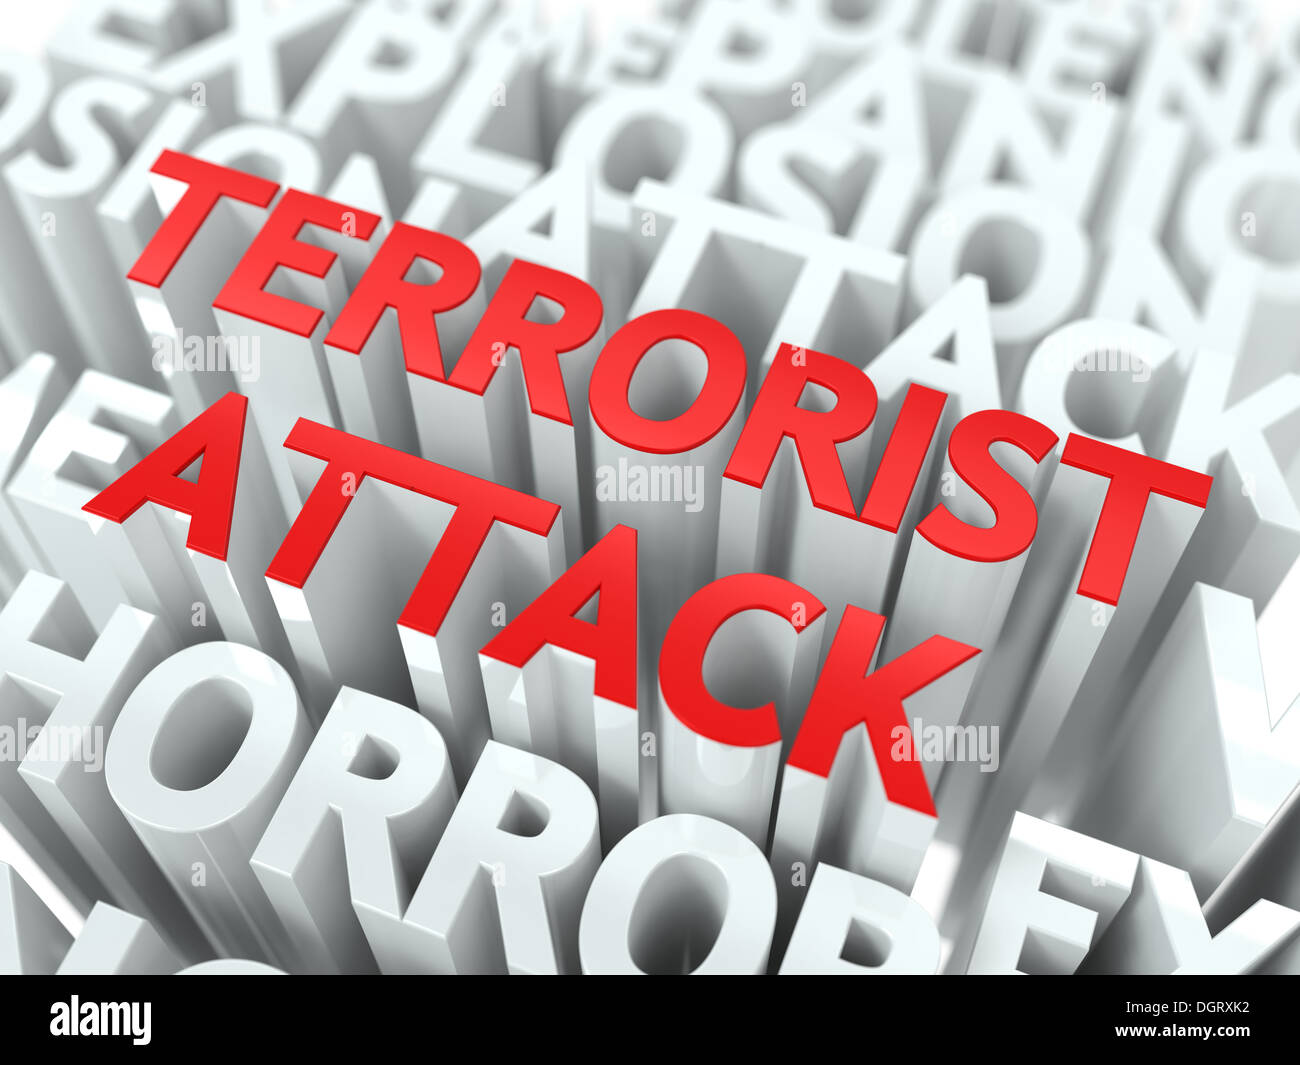 Terrorism Concept. Stock Photo